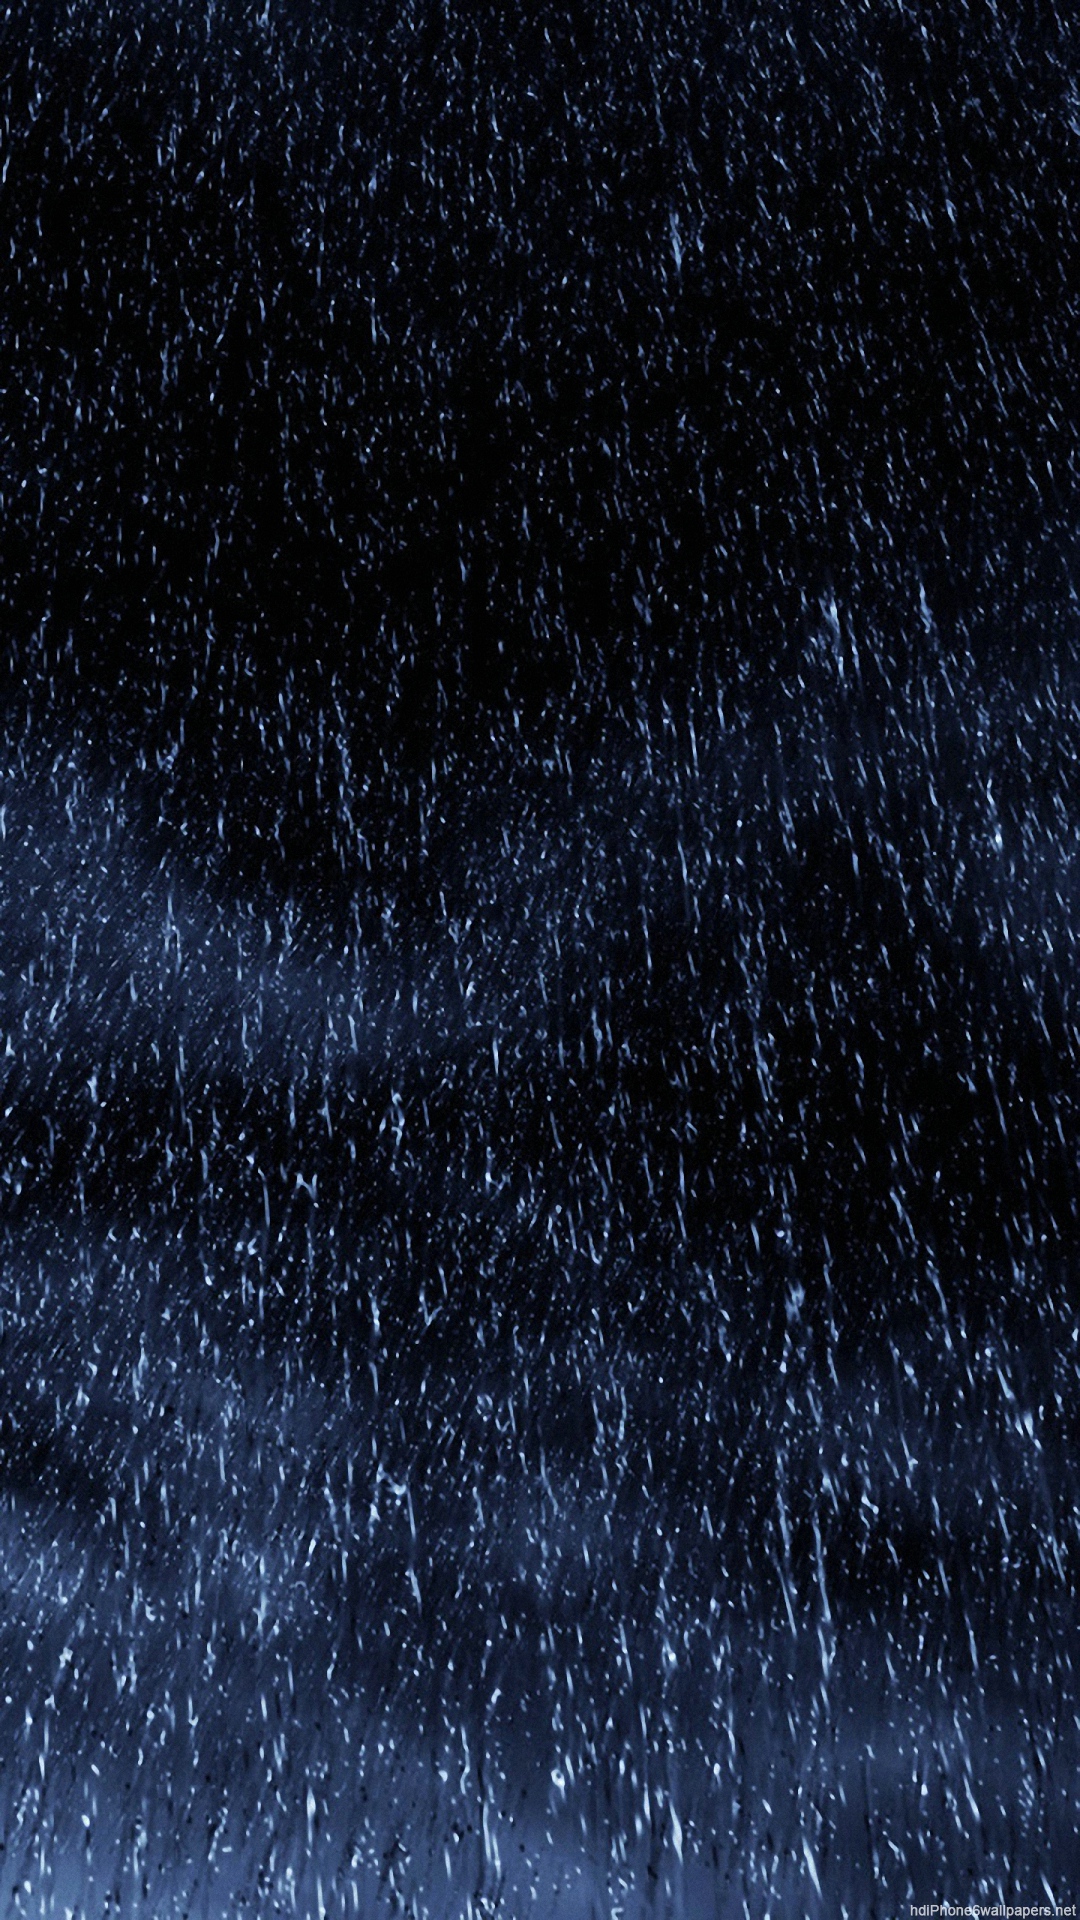 Rainy Wallpapers  1080p WallpaperSafari